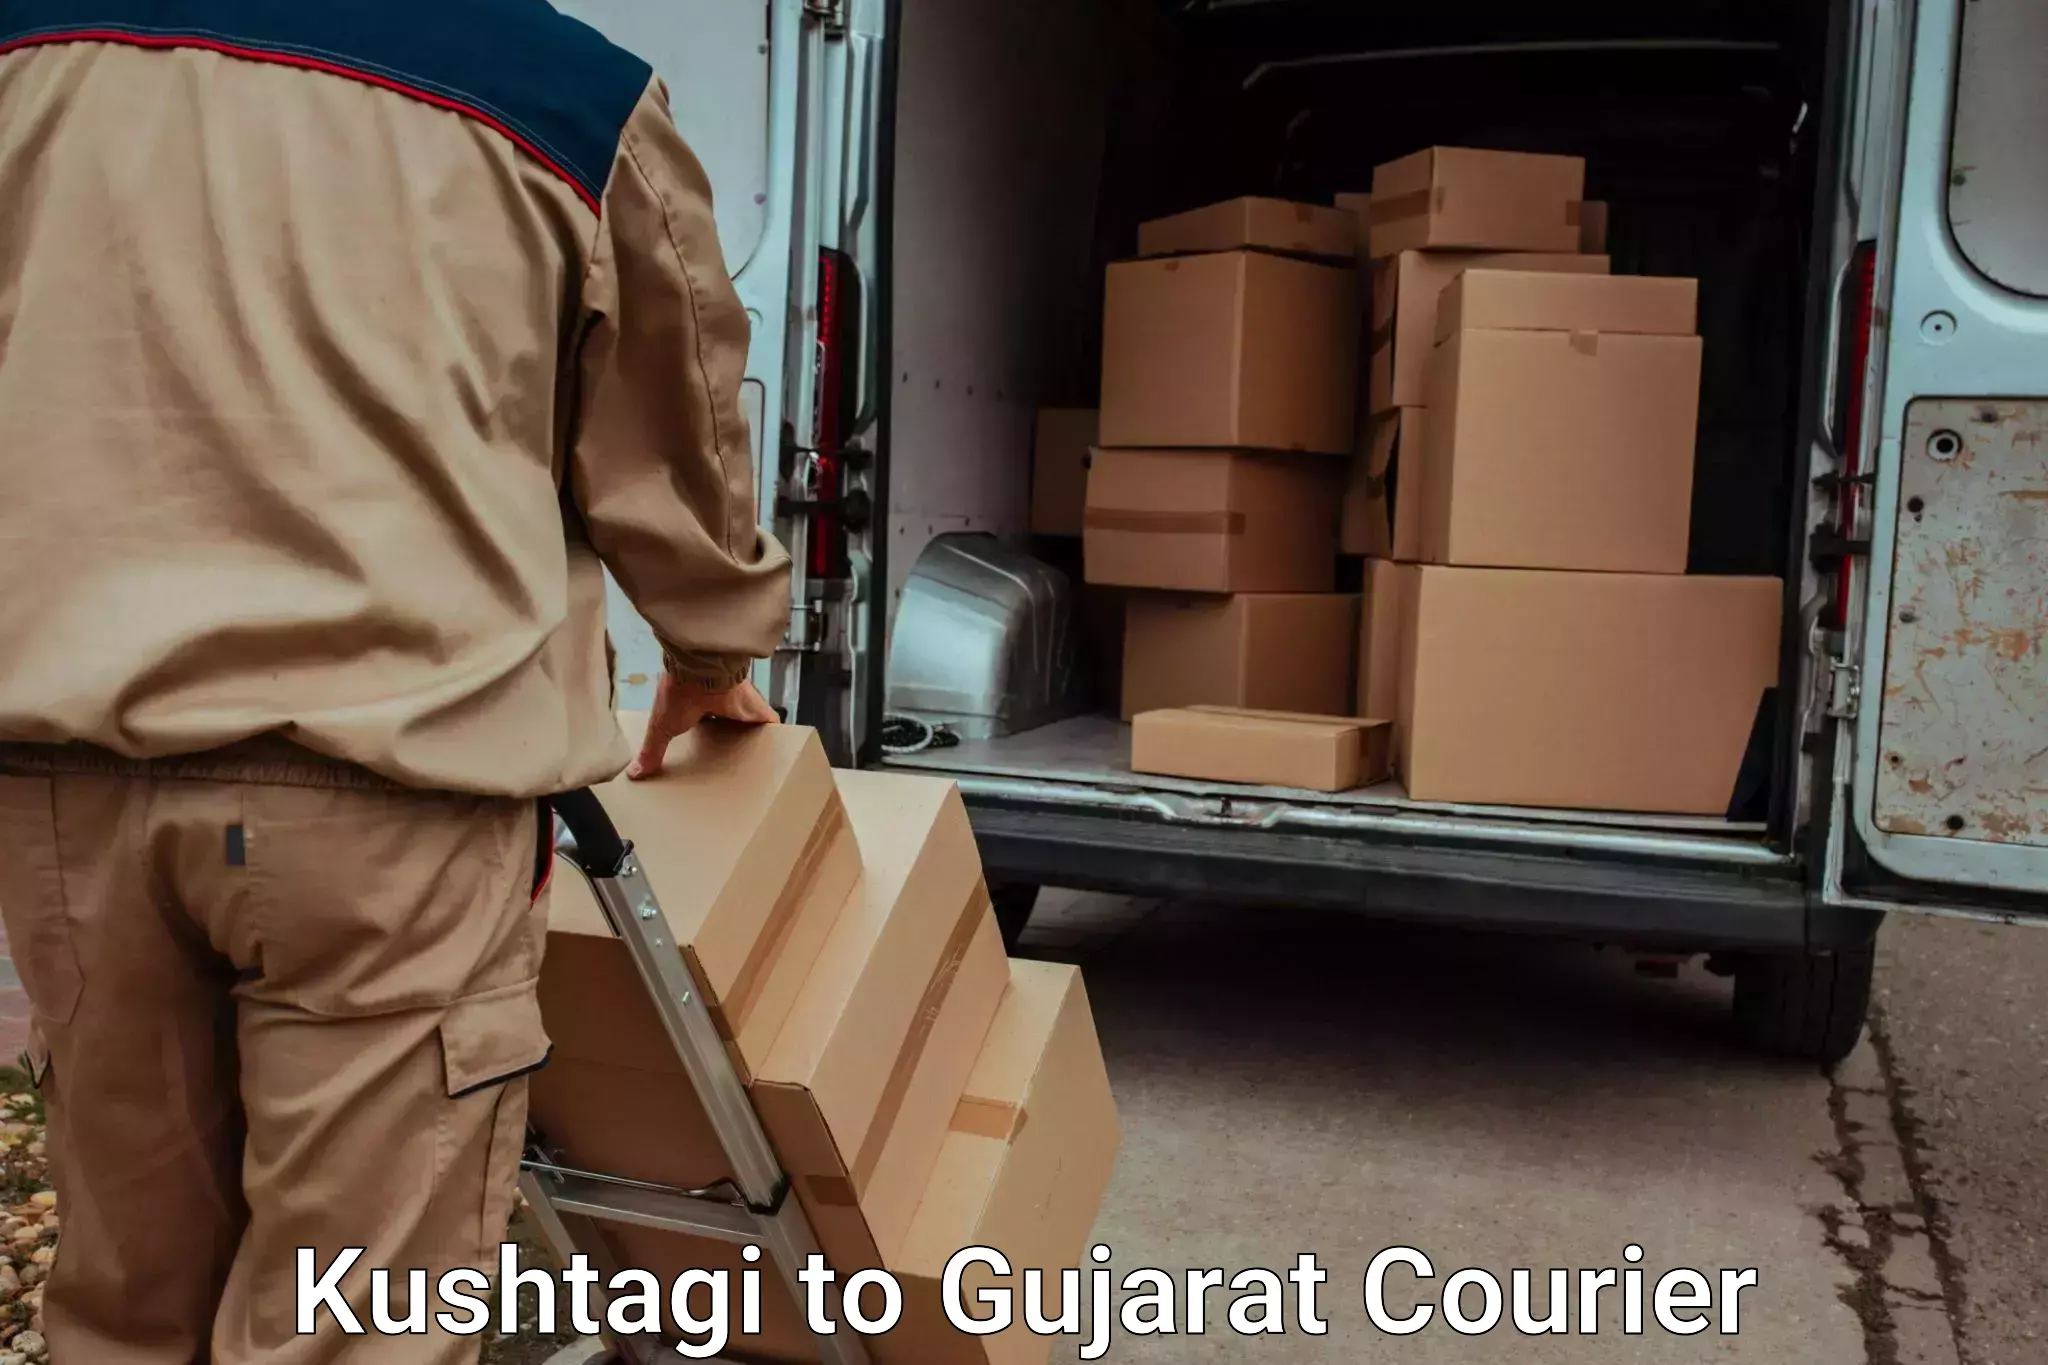 Luggage transport service Kushtagi to Bhuj